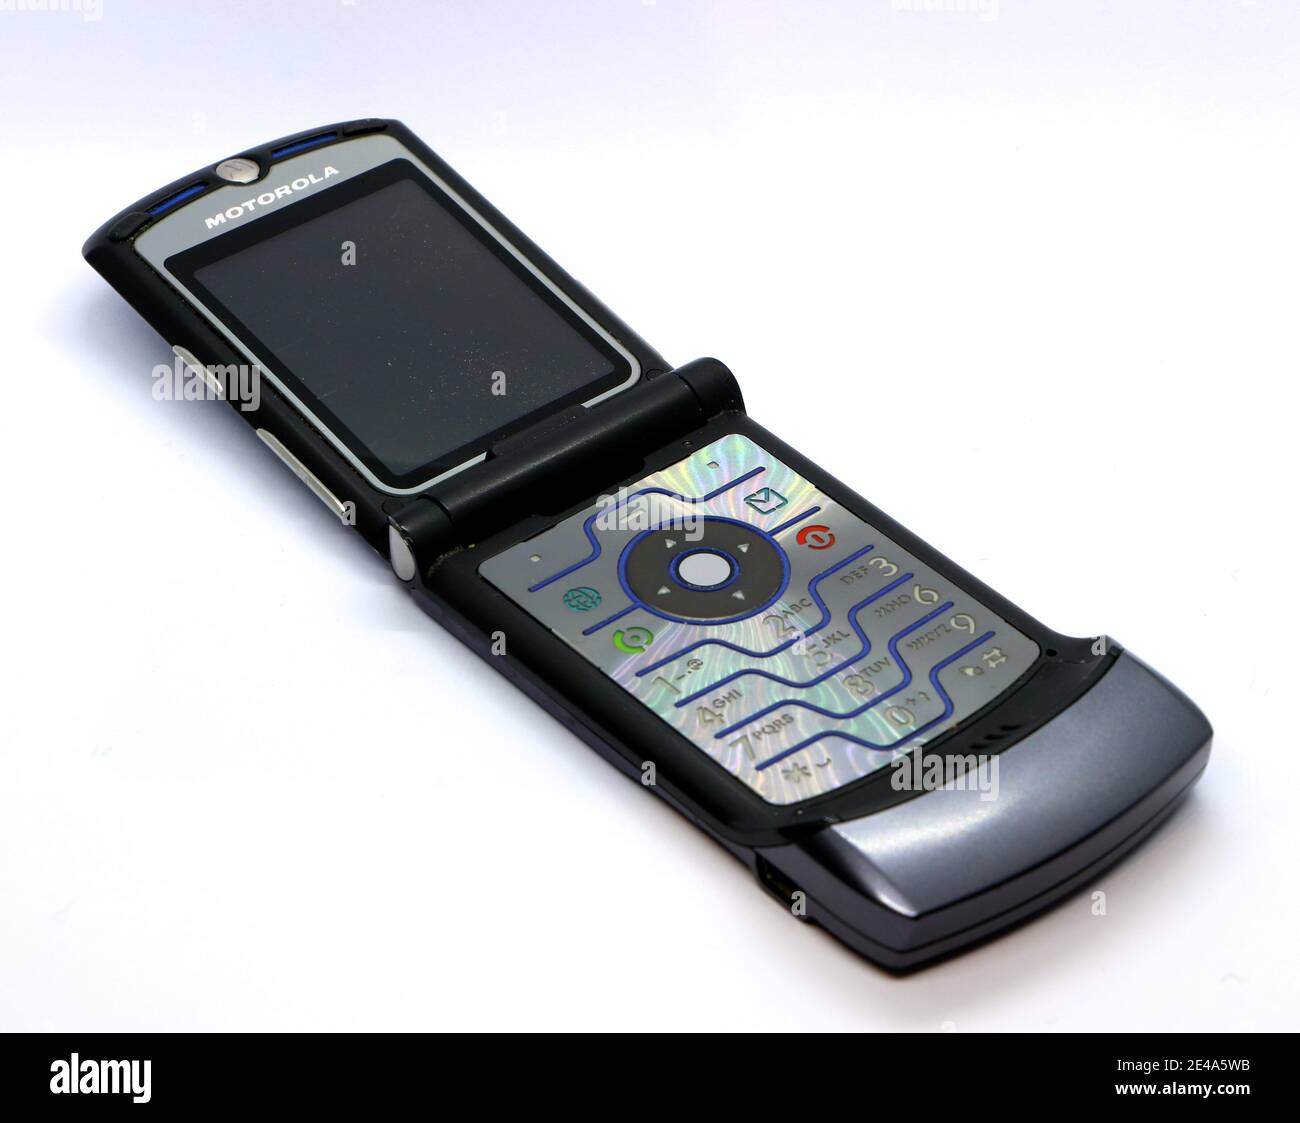 Foto di un telefono cellulare Clamshell Motorola Razor V3 aperto su sfondo bianco Foto Stock